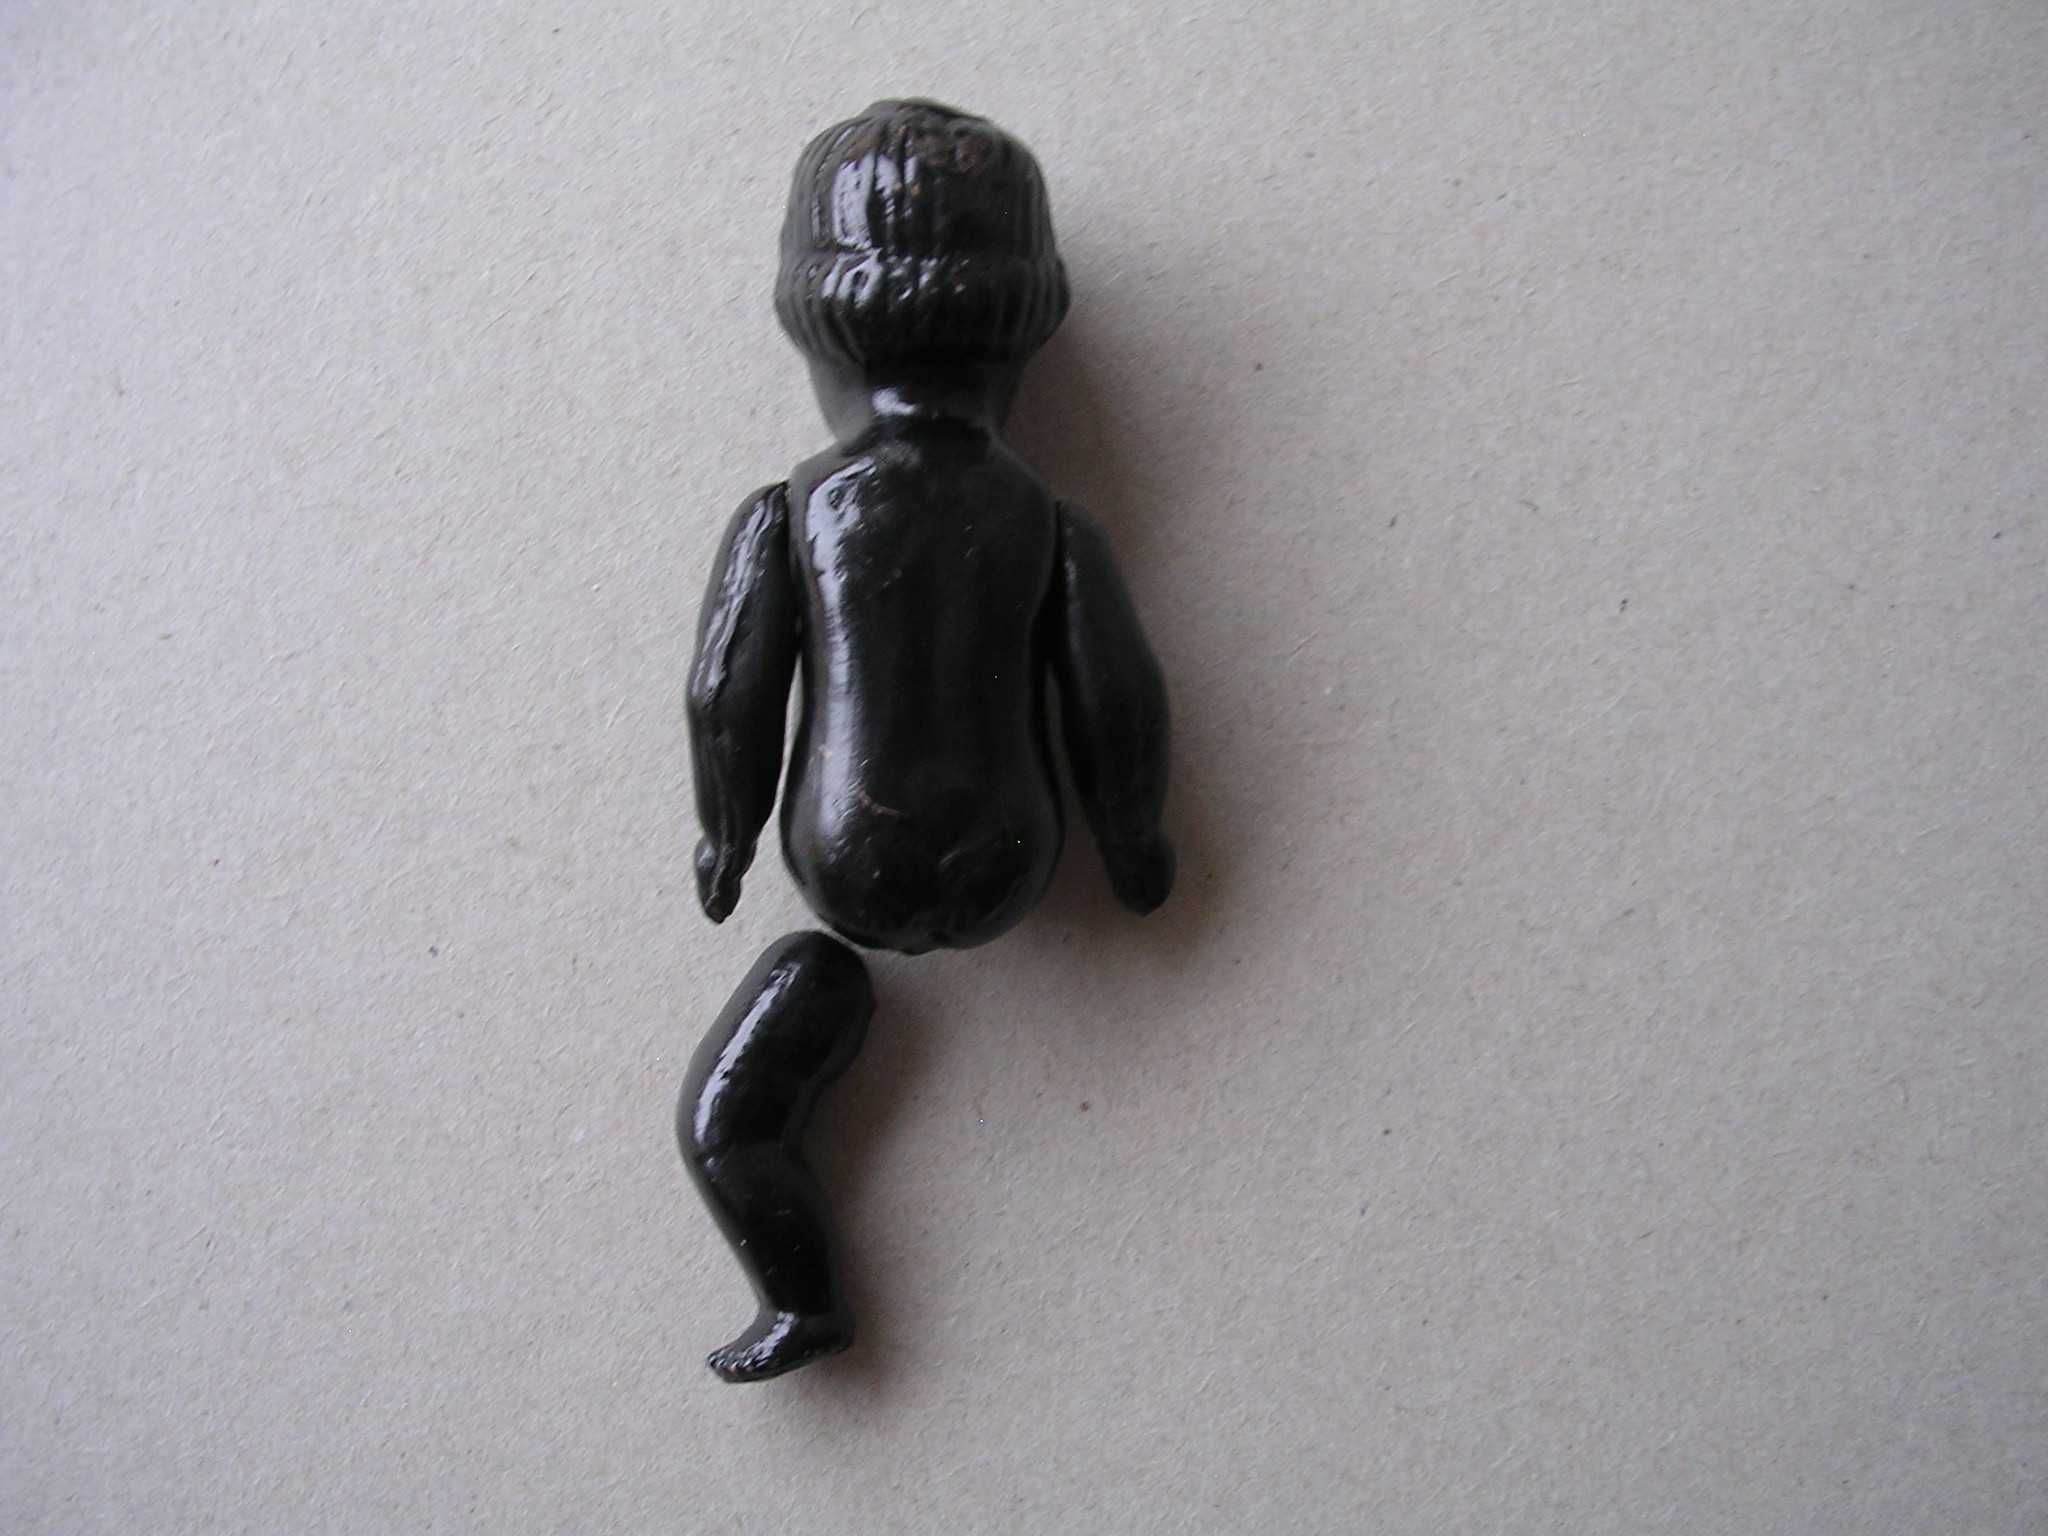 Stara zabawka z prl u figurka lalka murzynek celuloid stare zabawki